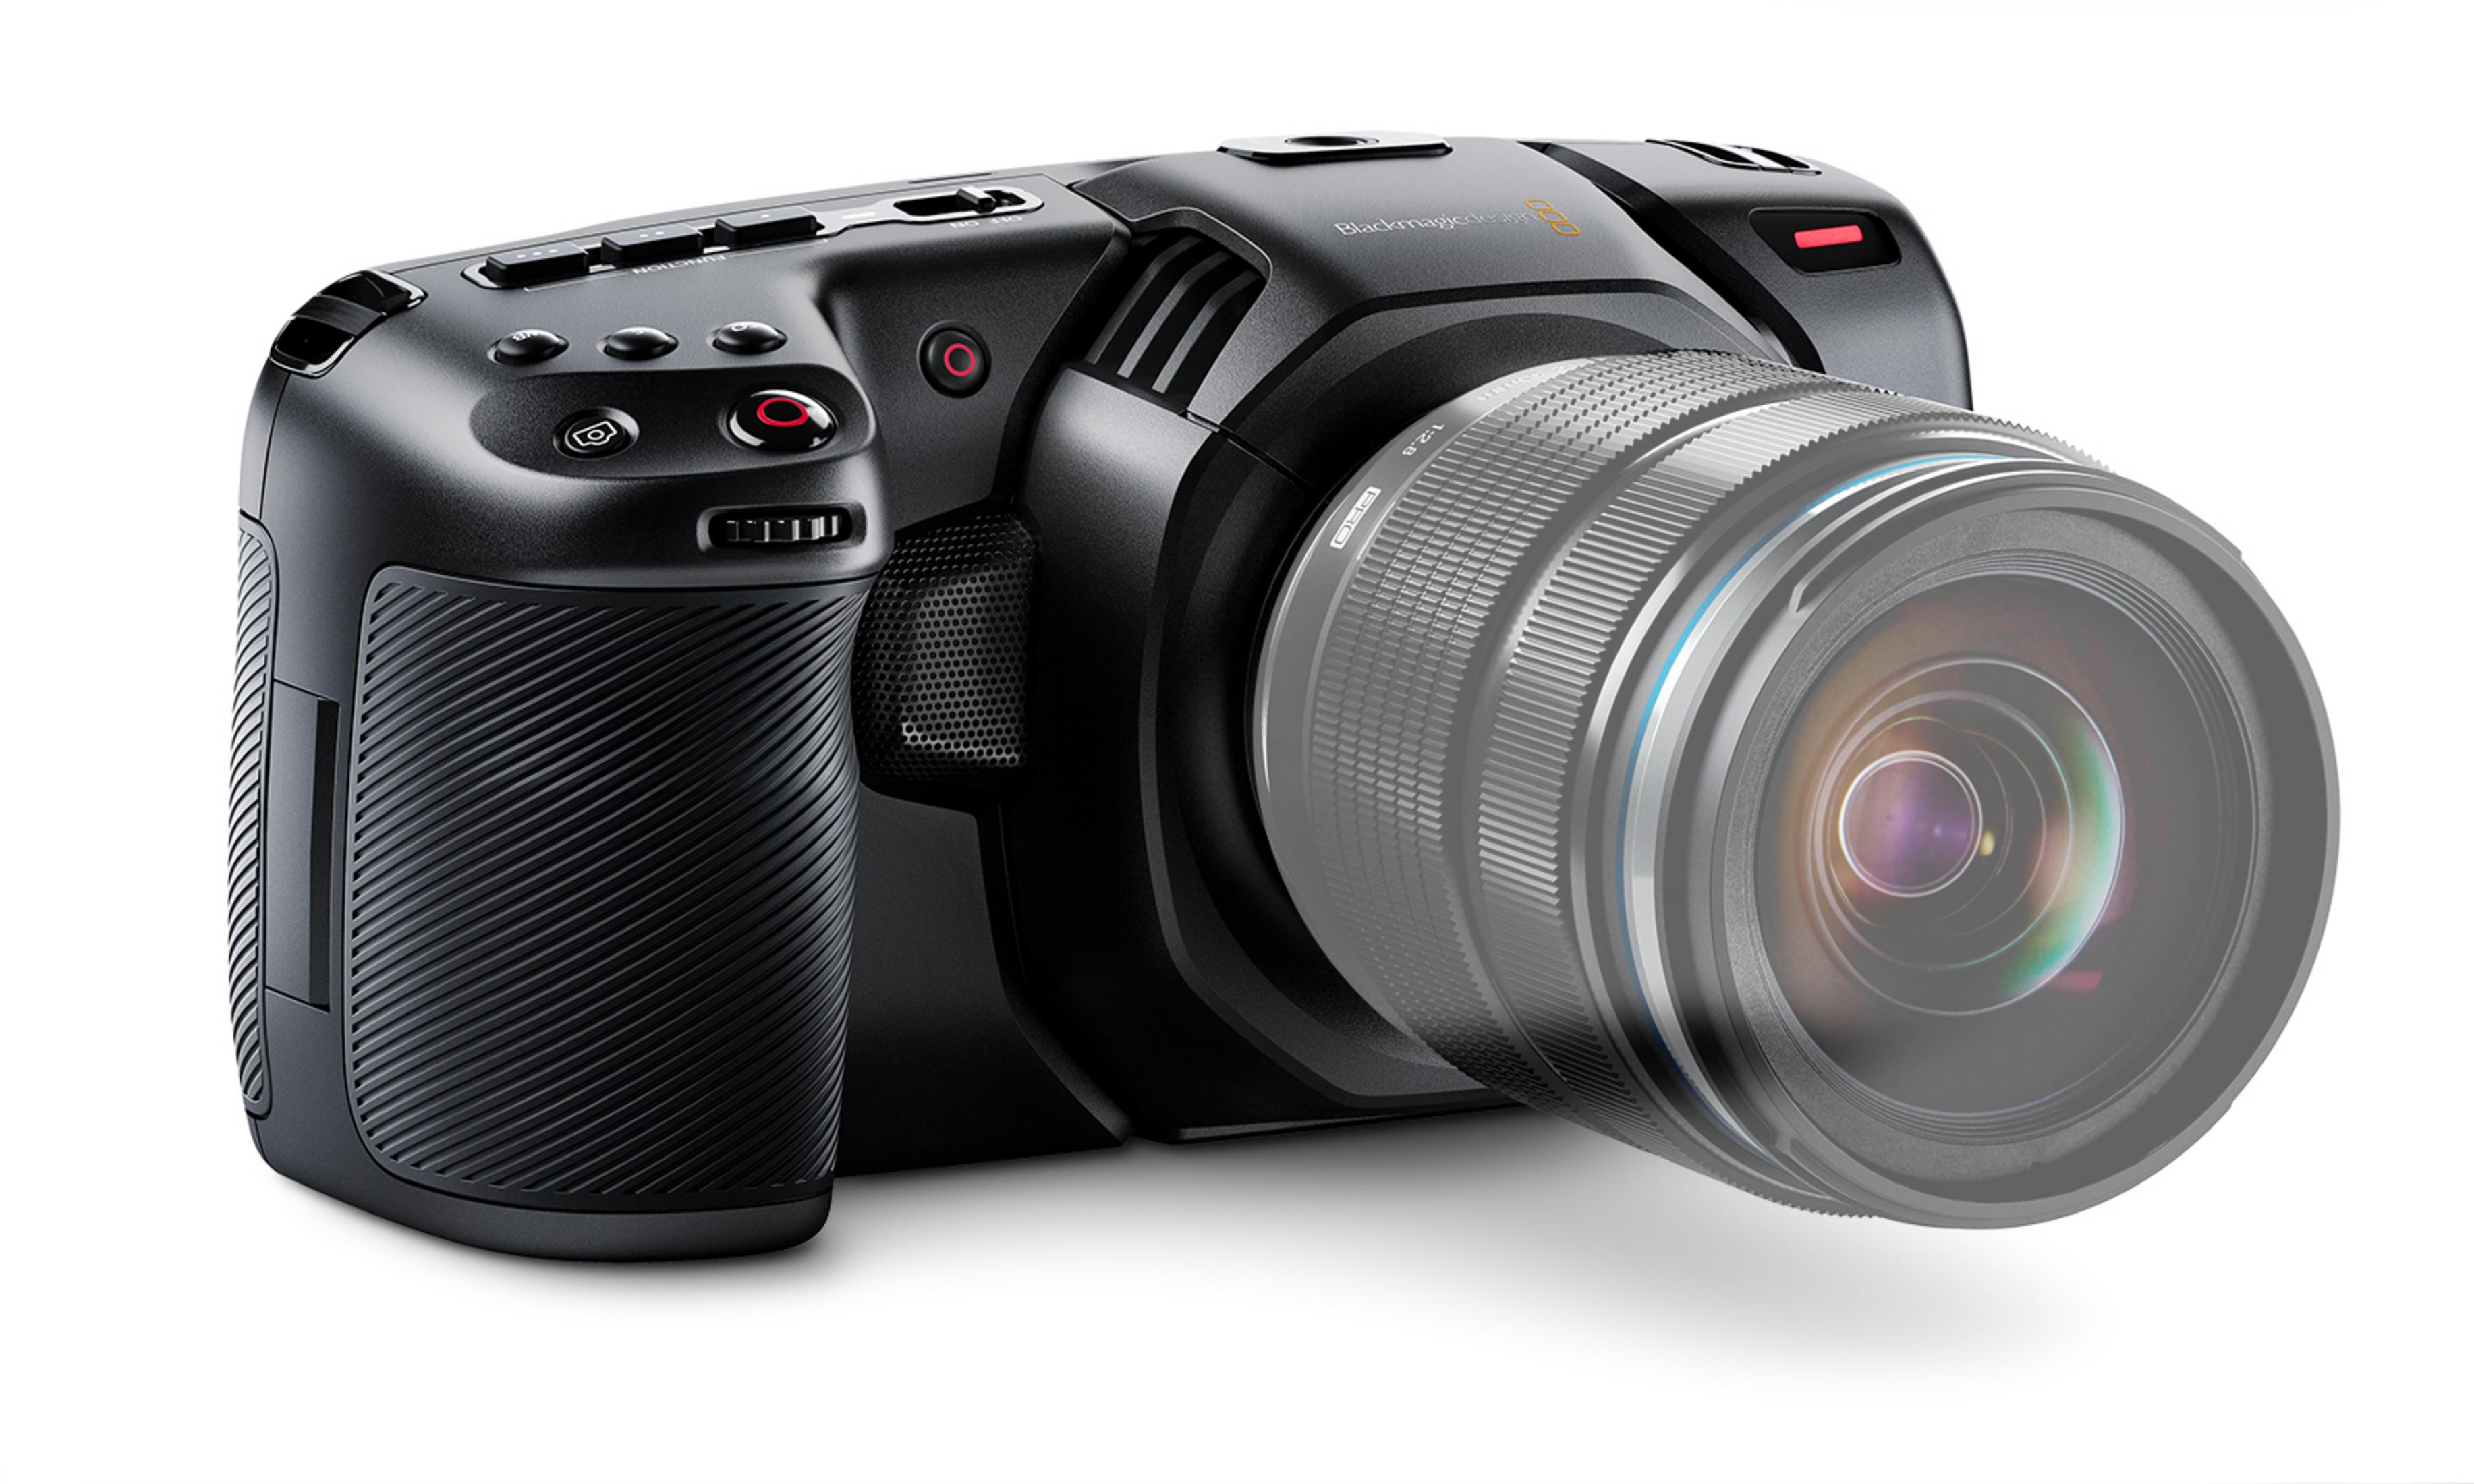 BM-CINECAMPOCHDMFT4K Digitalkamera DESIGN opt. BLACKMAGIC Zoom